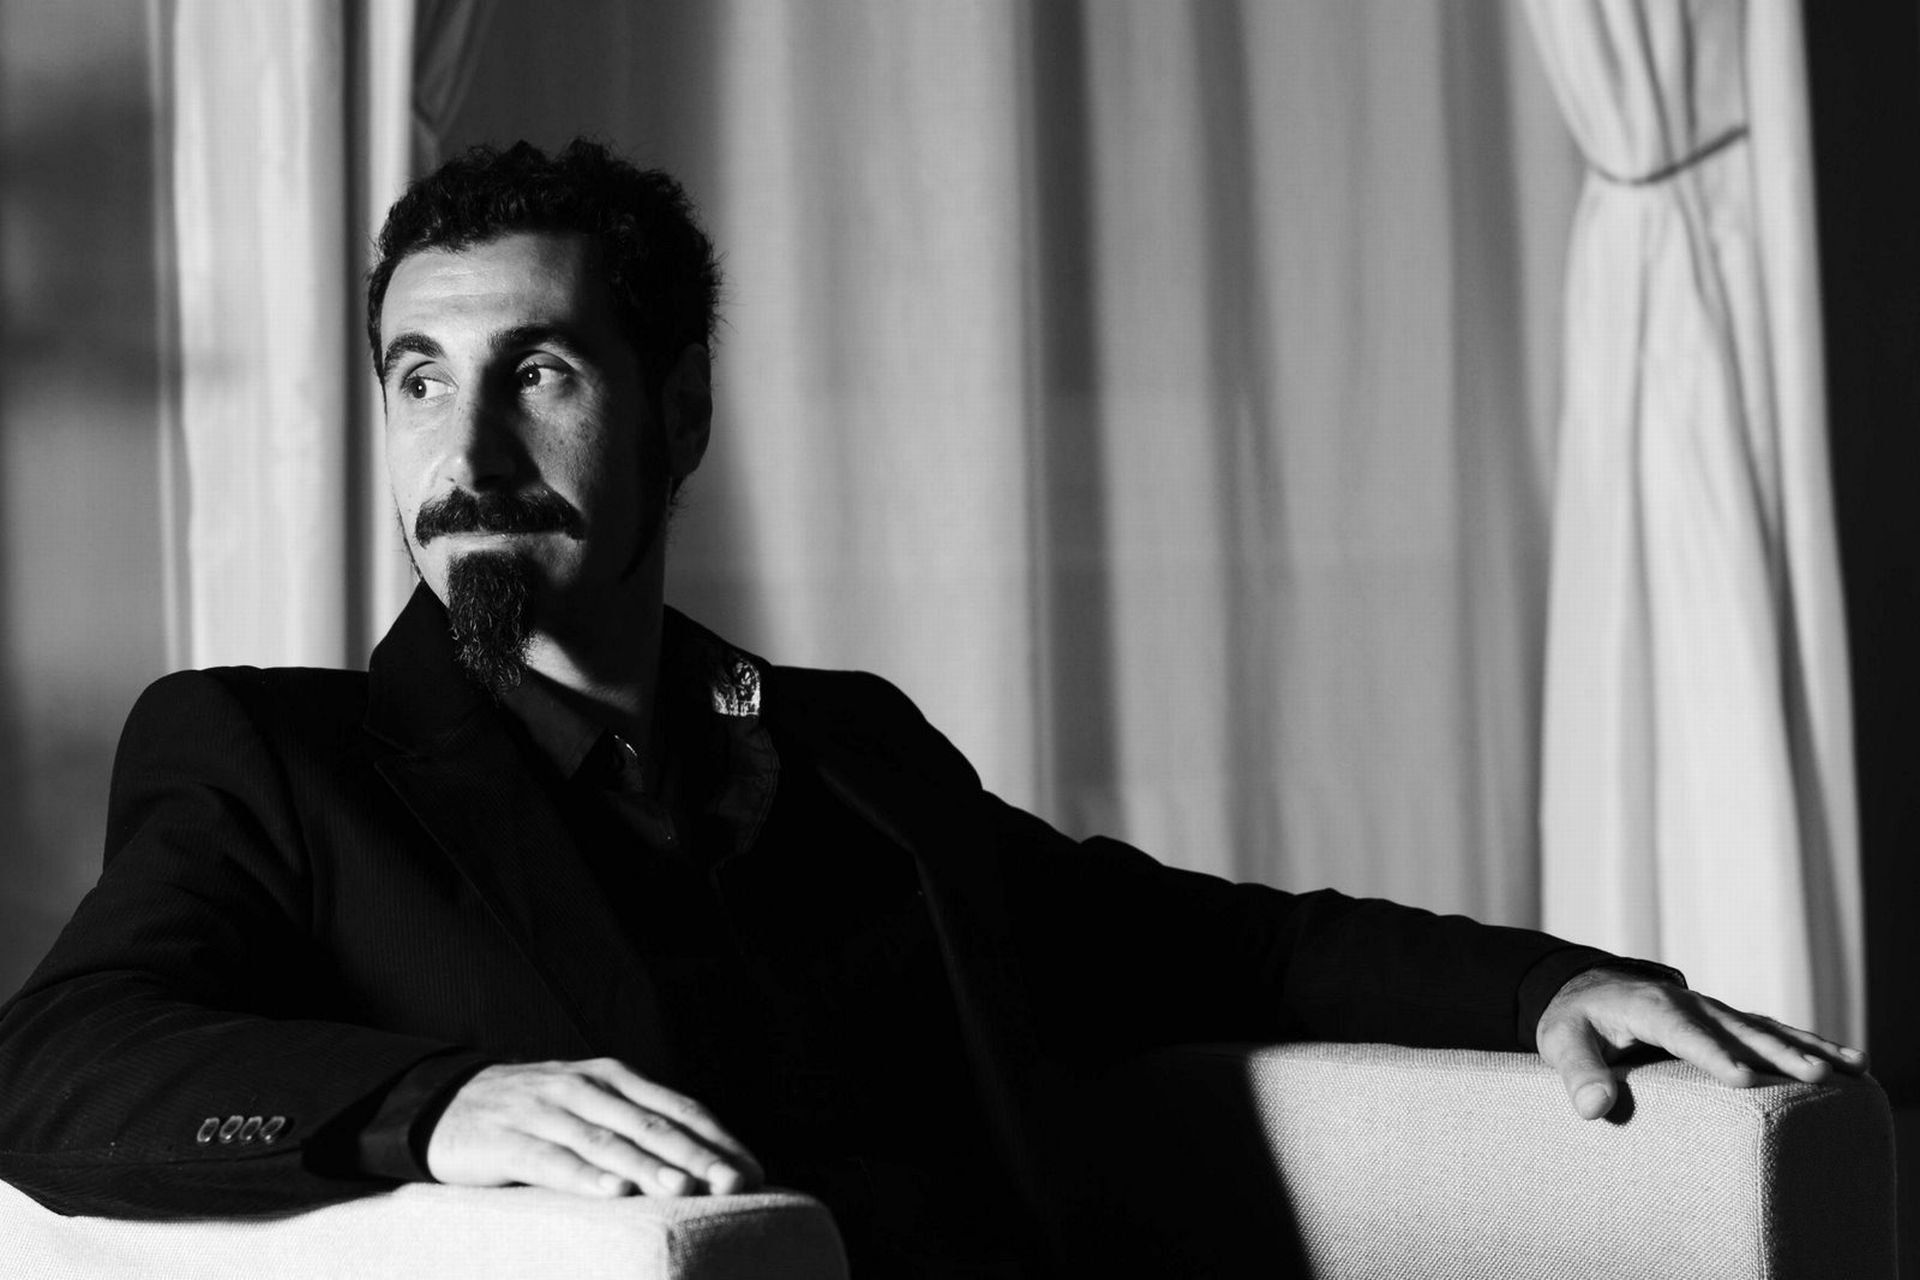 Melhores papéis de parede de Serj Tankian para tela do telefone